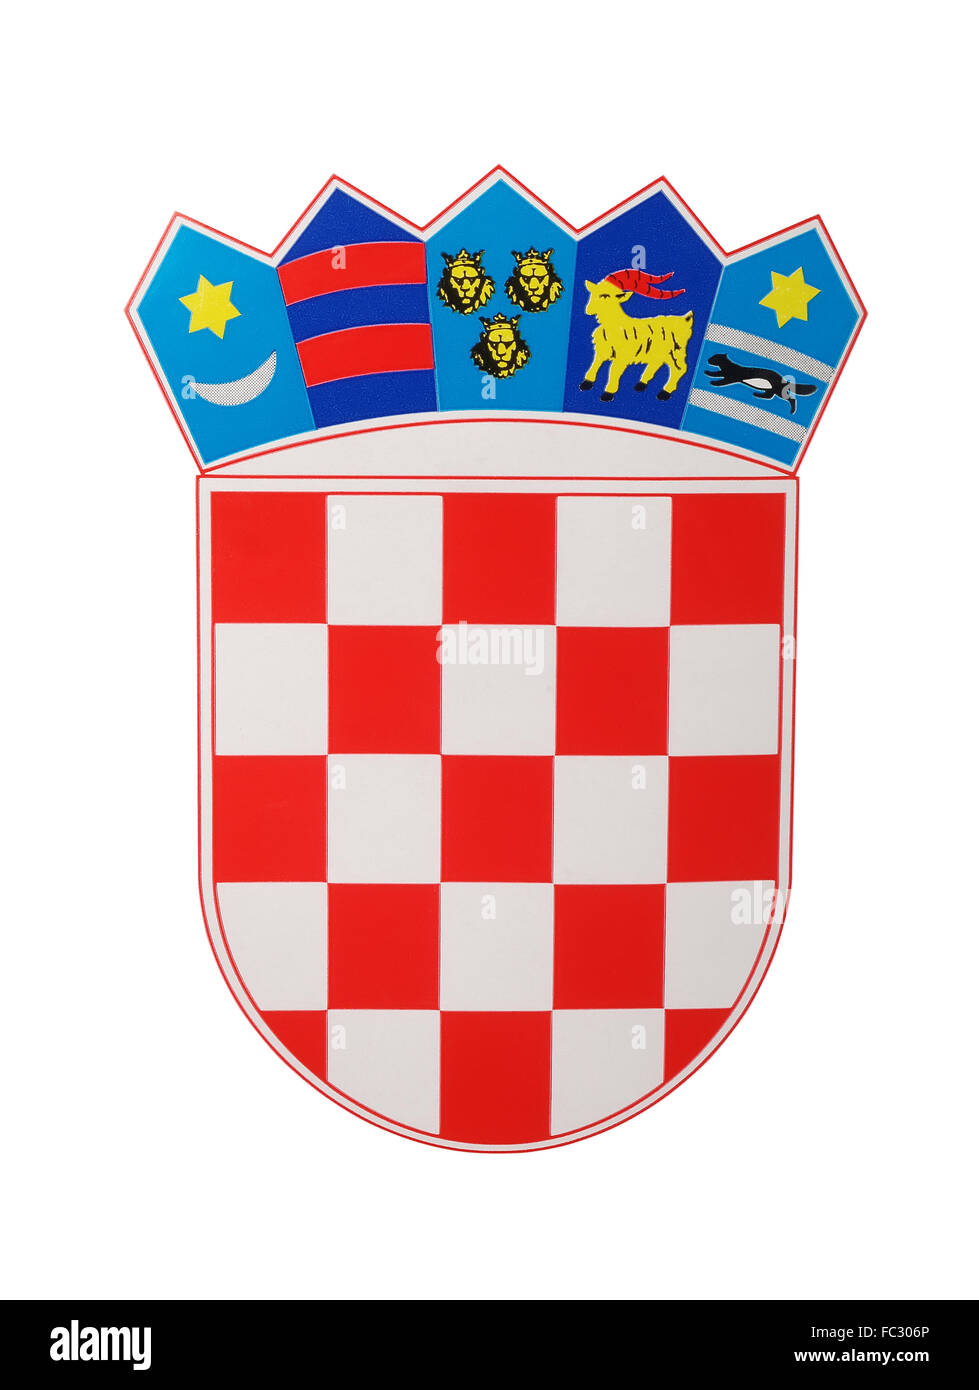 Emblème de la Croatie, photographie, studio shot Banque D'Images